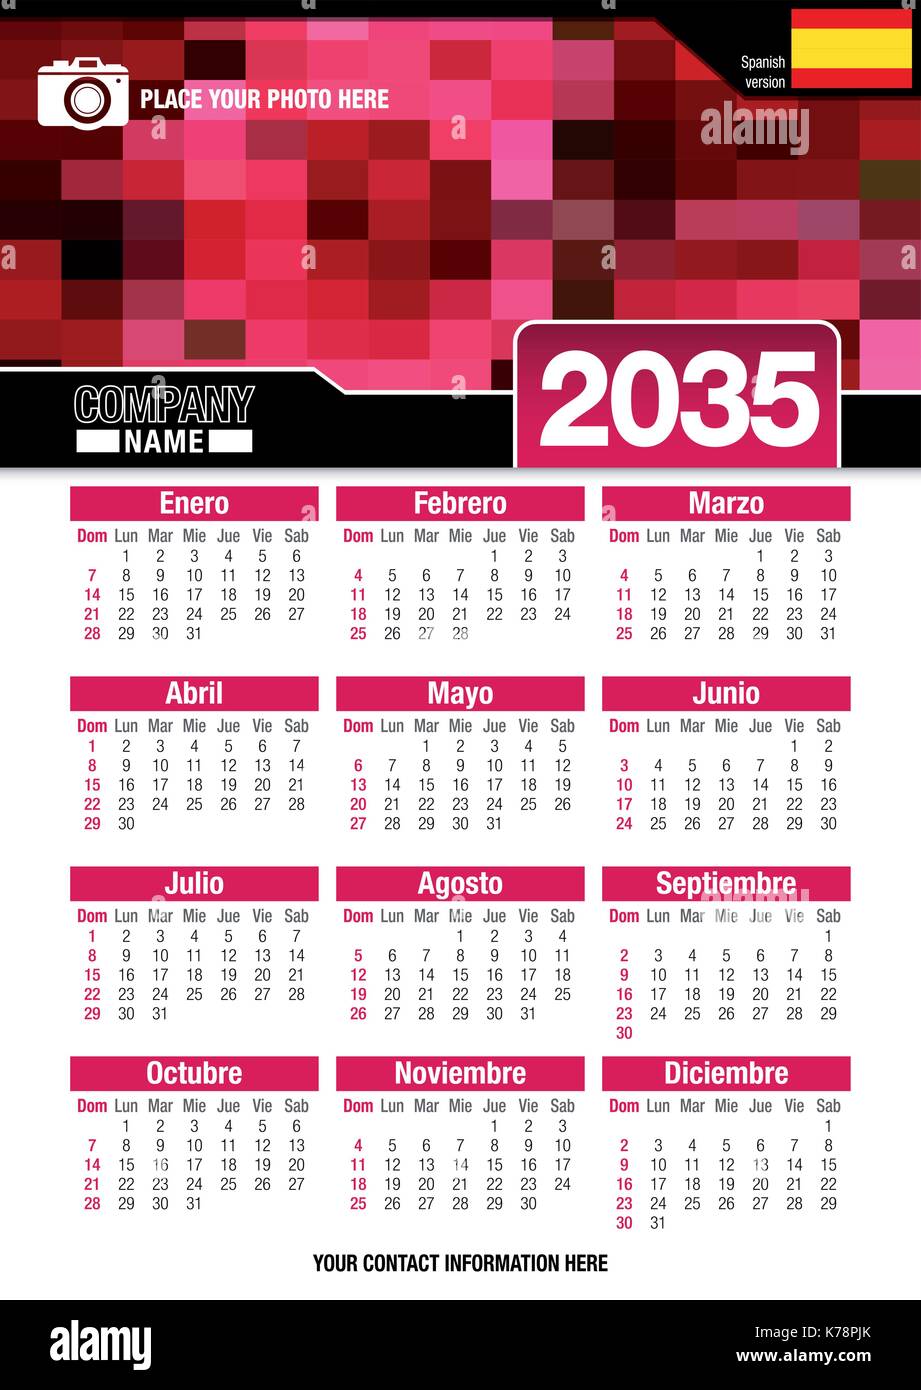 Utile calendario da parete 2035 con design di colori rosso mosaico. Formato A4 verticale. Dimensioni: 210mm x 297mm. Versione spagnola - immagine vettoriale Illustrazione Vettoriale